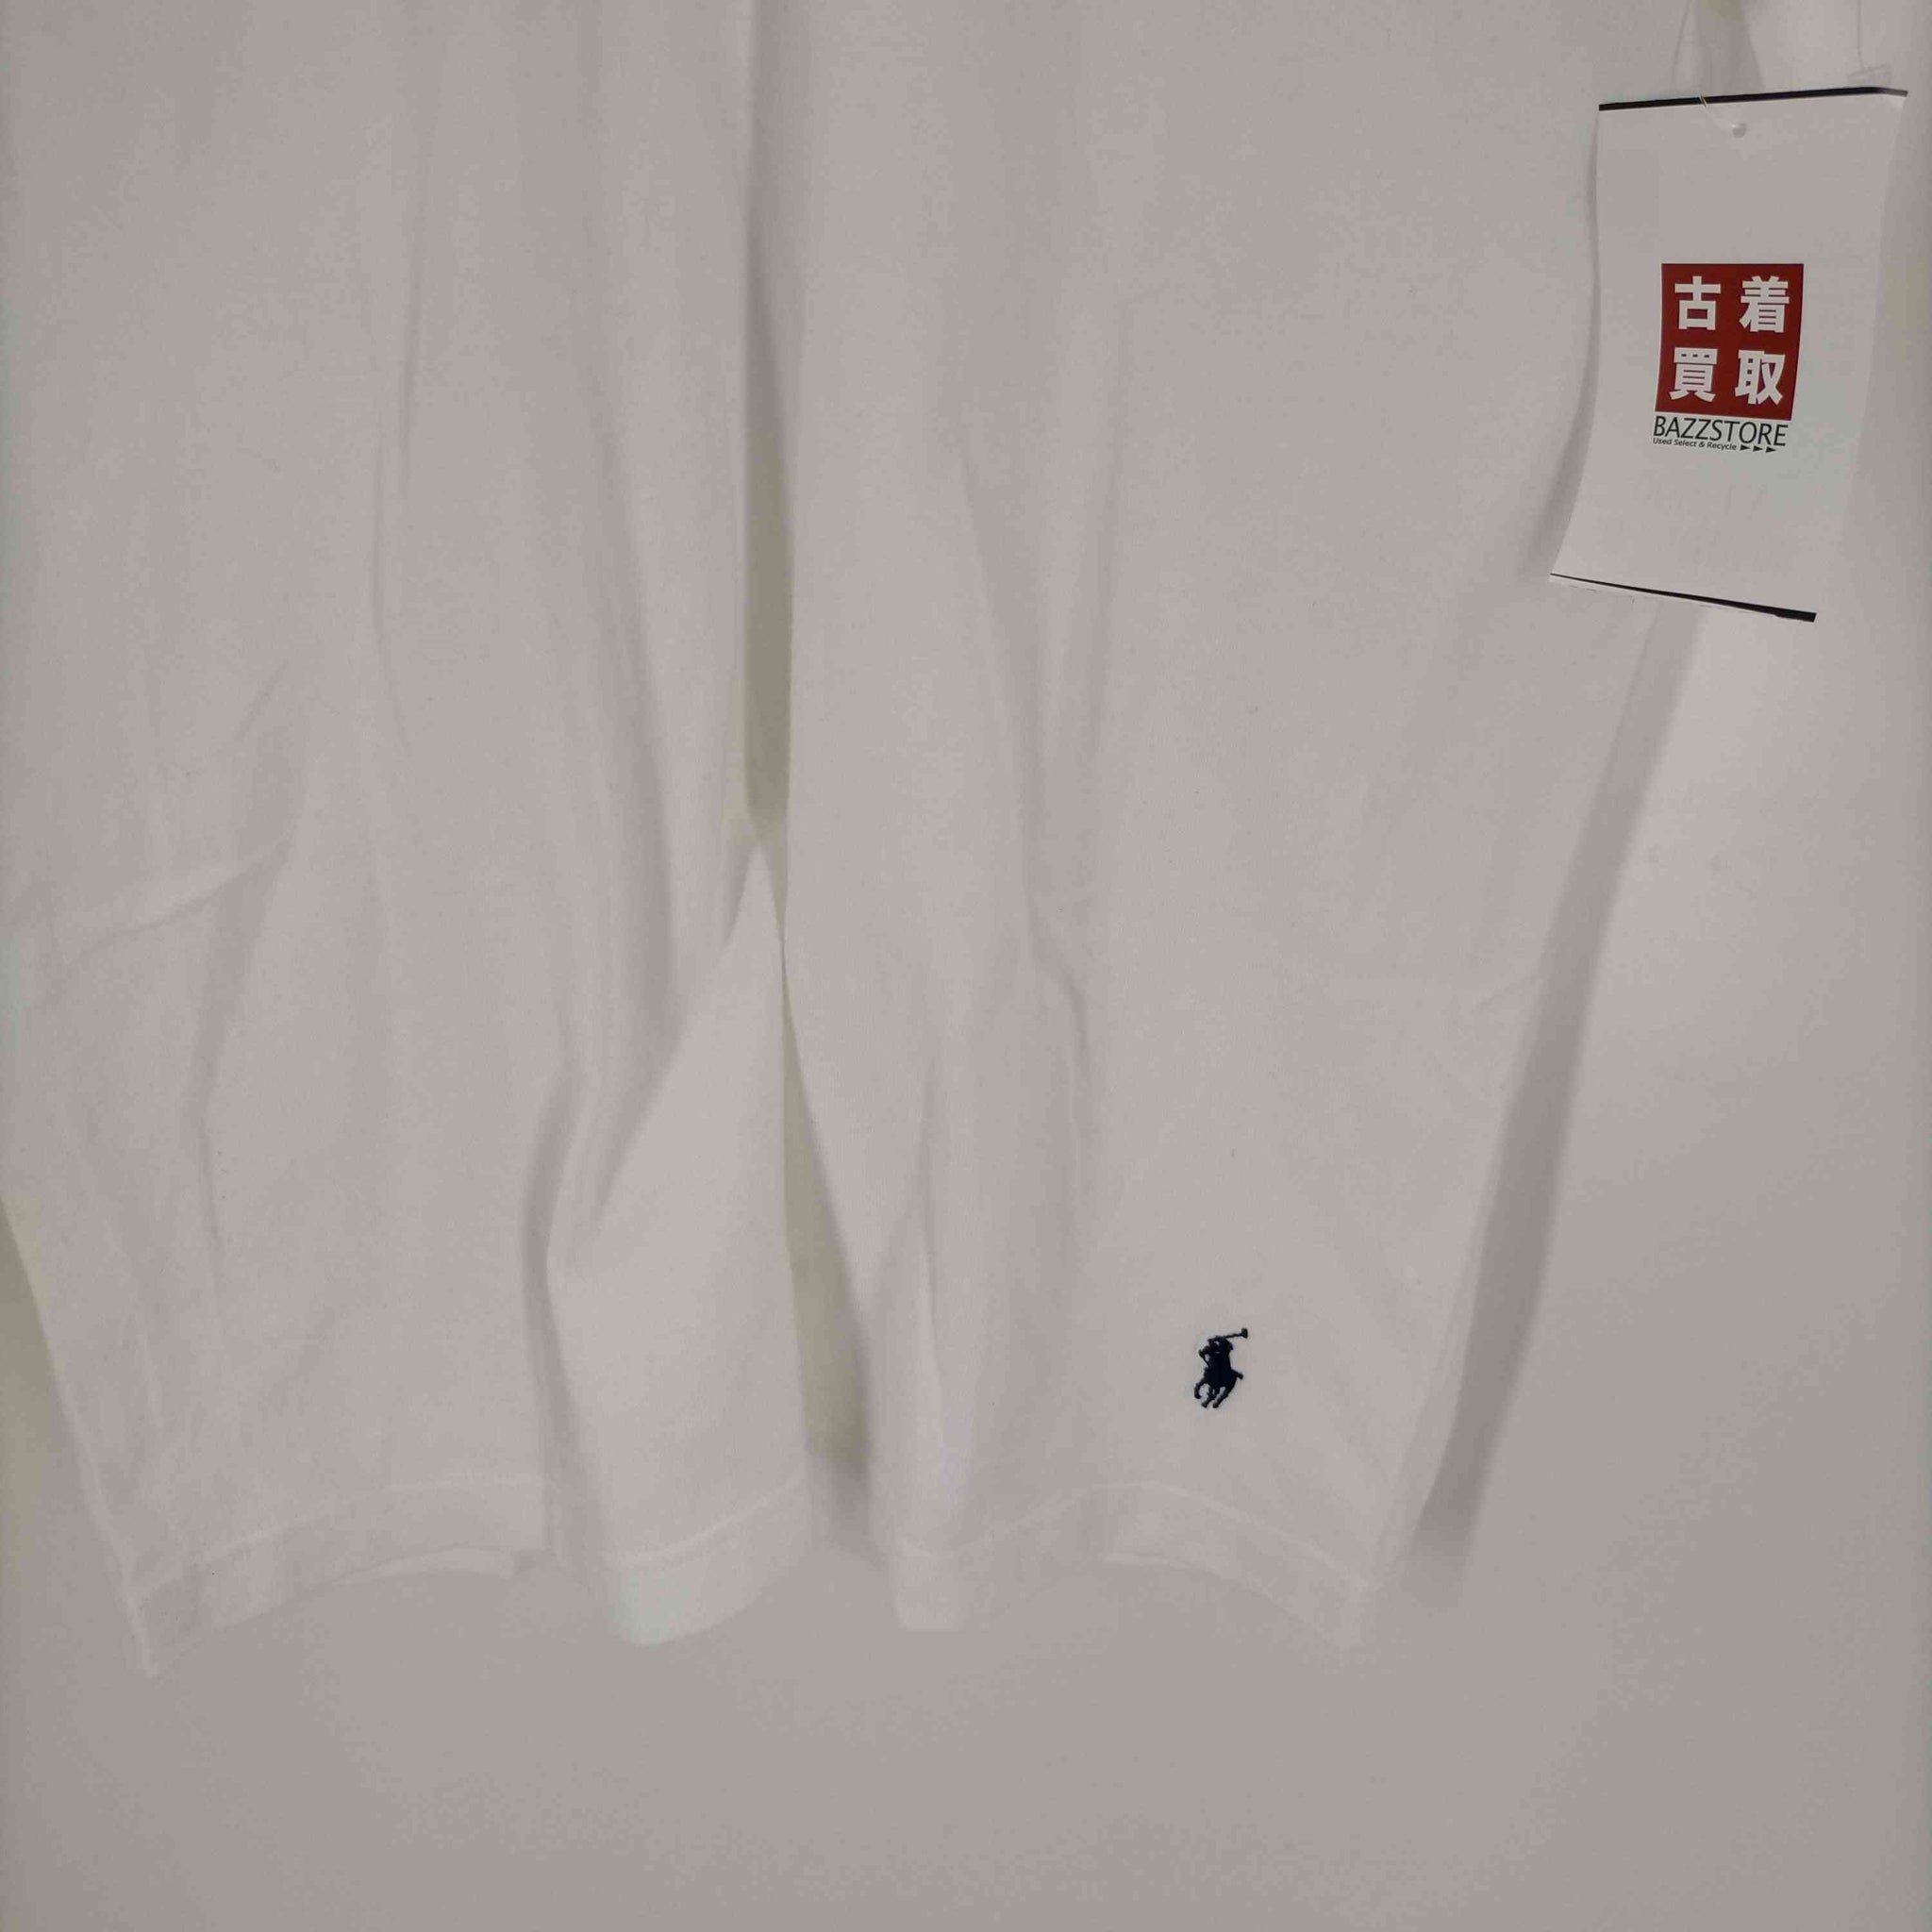 Polo by RALPH LAUREN(ポロバイラルフローレン)ポニー刺繍 クルーネックTシャツ